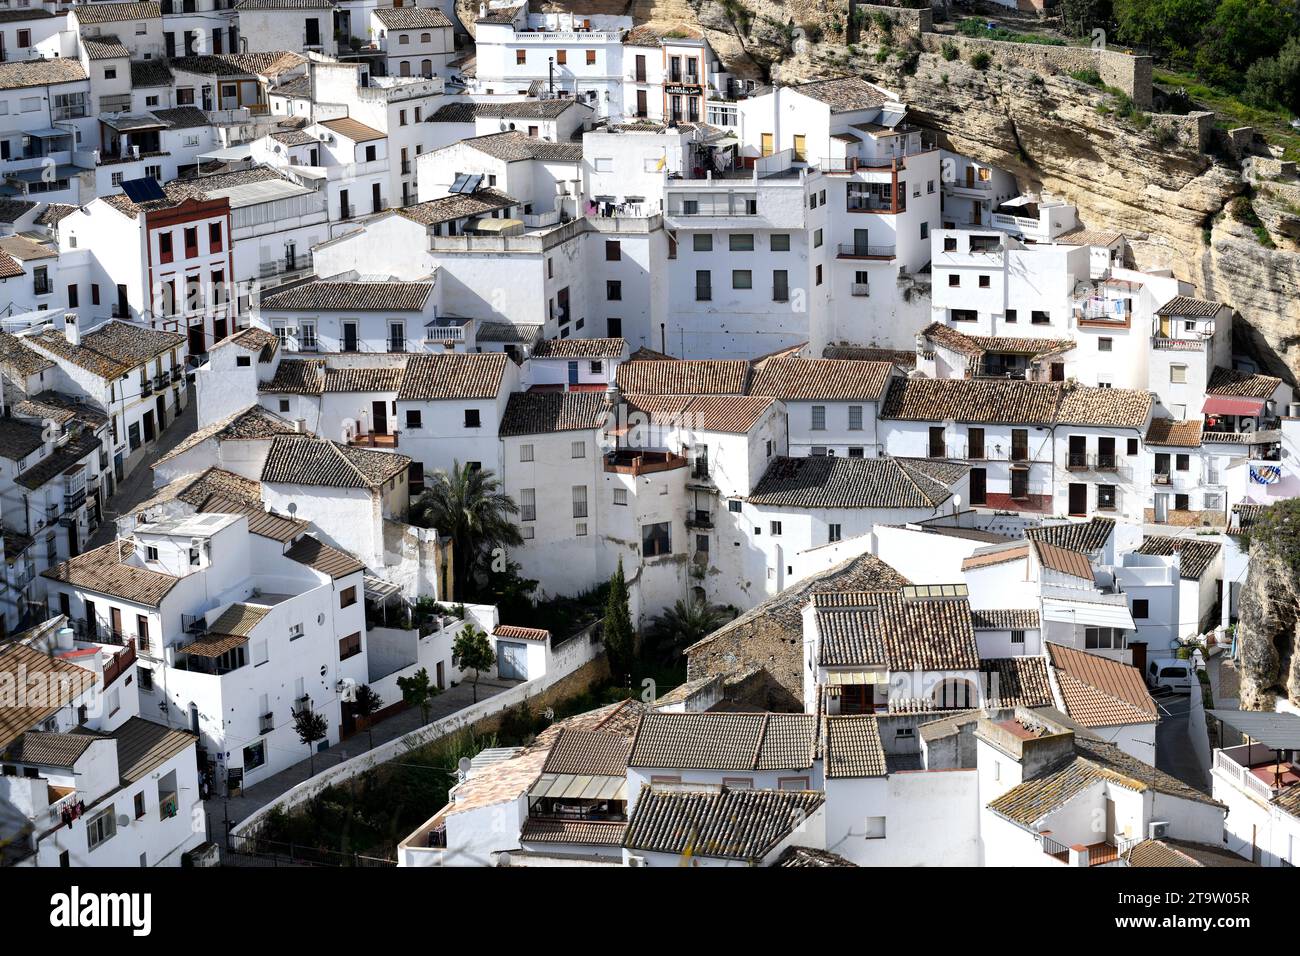 Setenil de las Bodegas, Ruta de los Pueblos Blancos. Cals, Andalusien, Spanien. Stockfoto